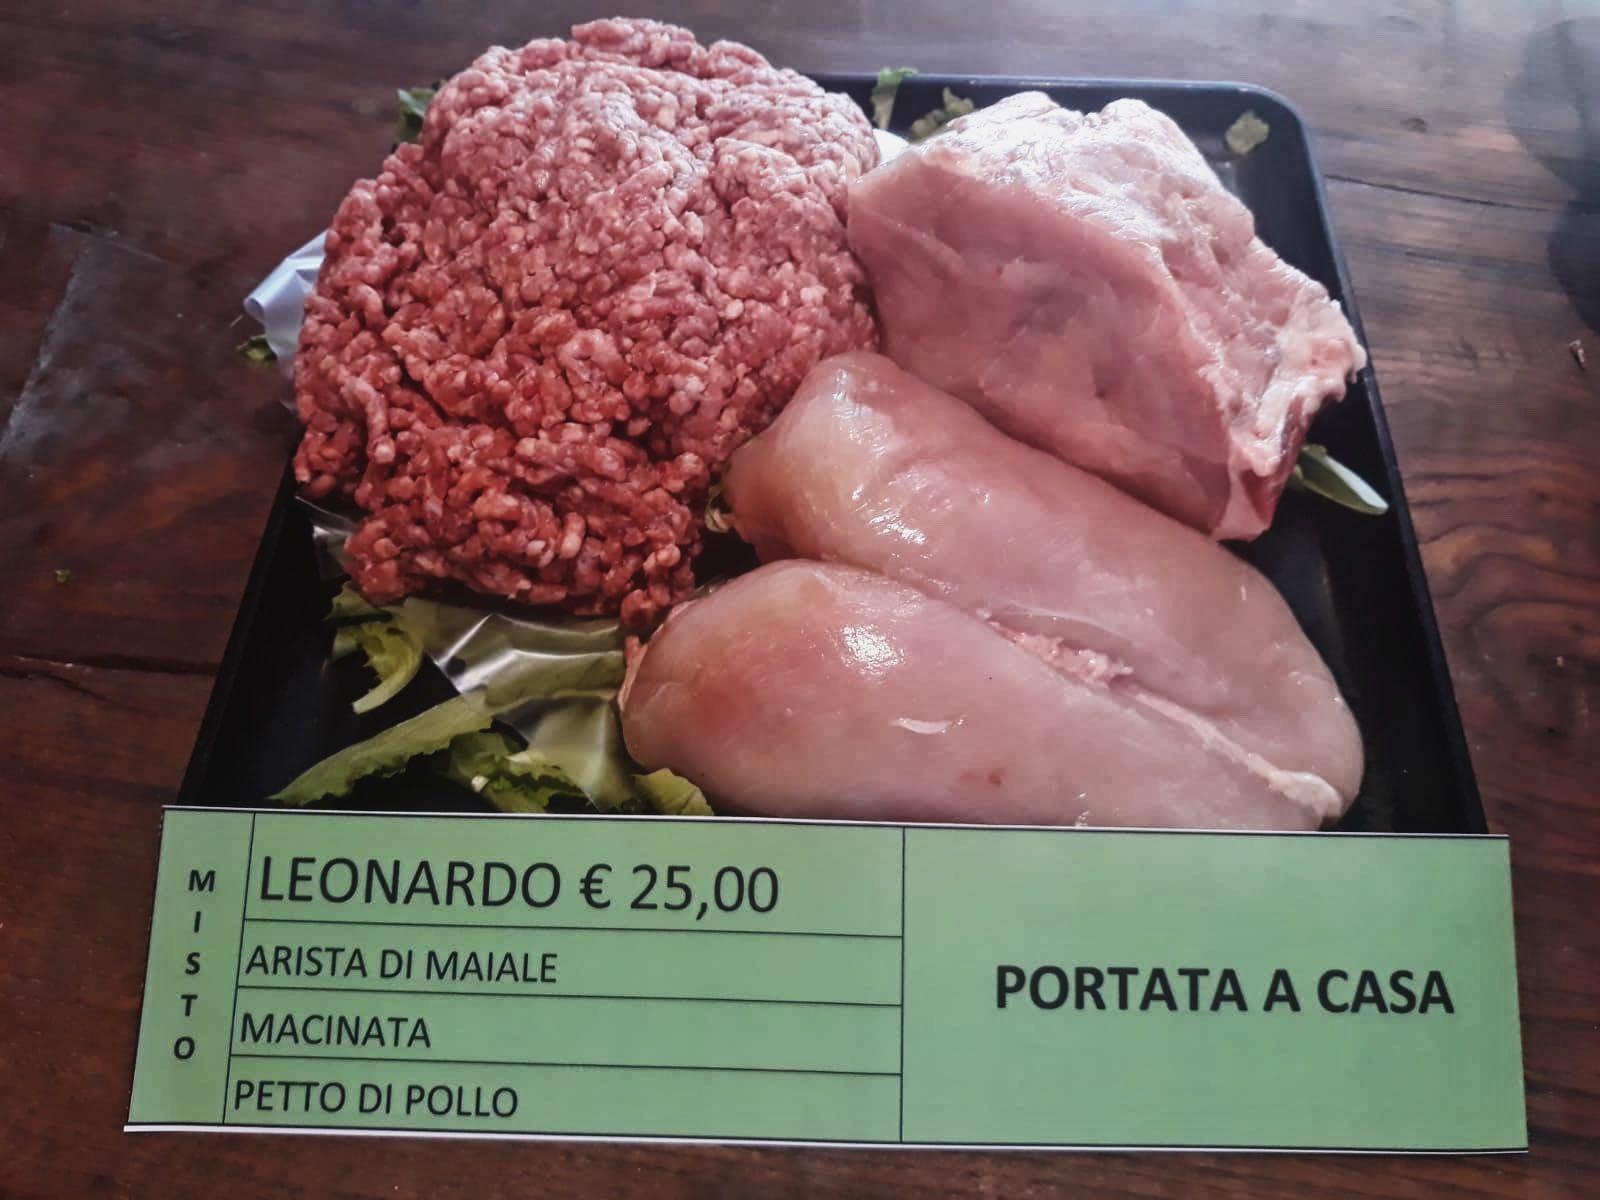 Leonardo - Arista di maiale 0,500 kg ca., Macinata bovino 1 kg ca., Petto pollo 0,500 kg ca.